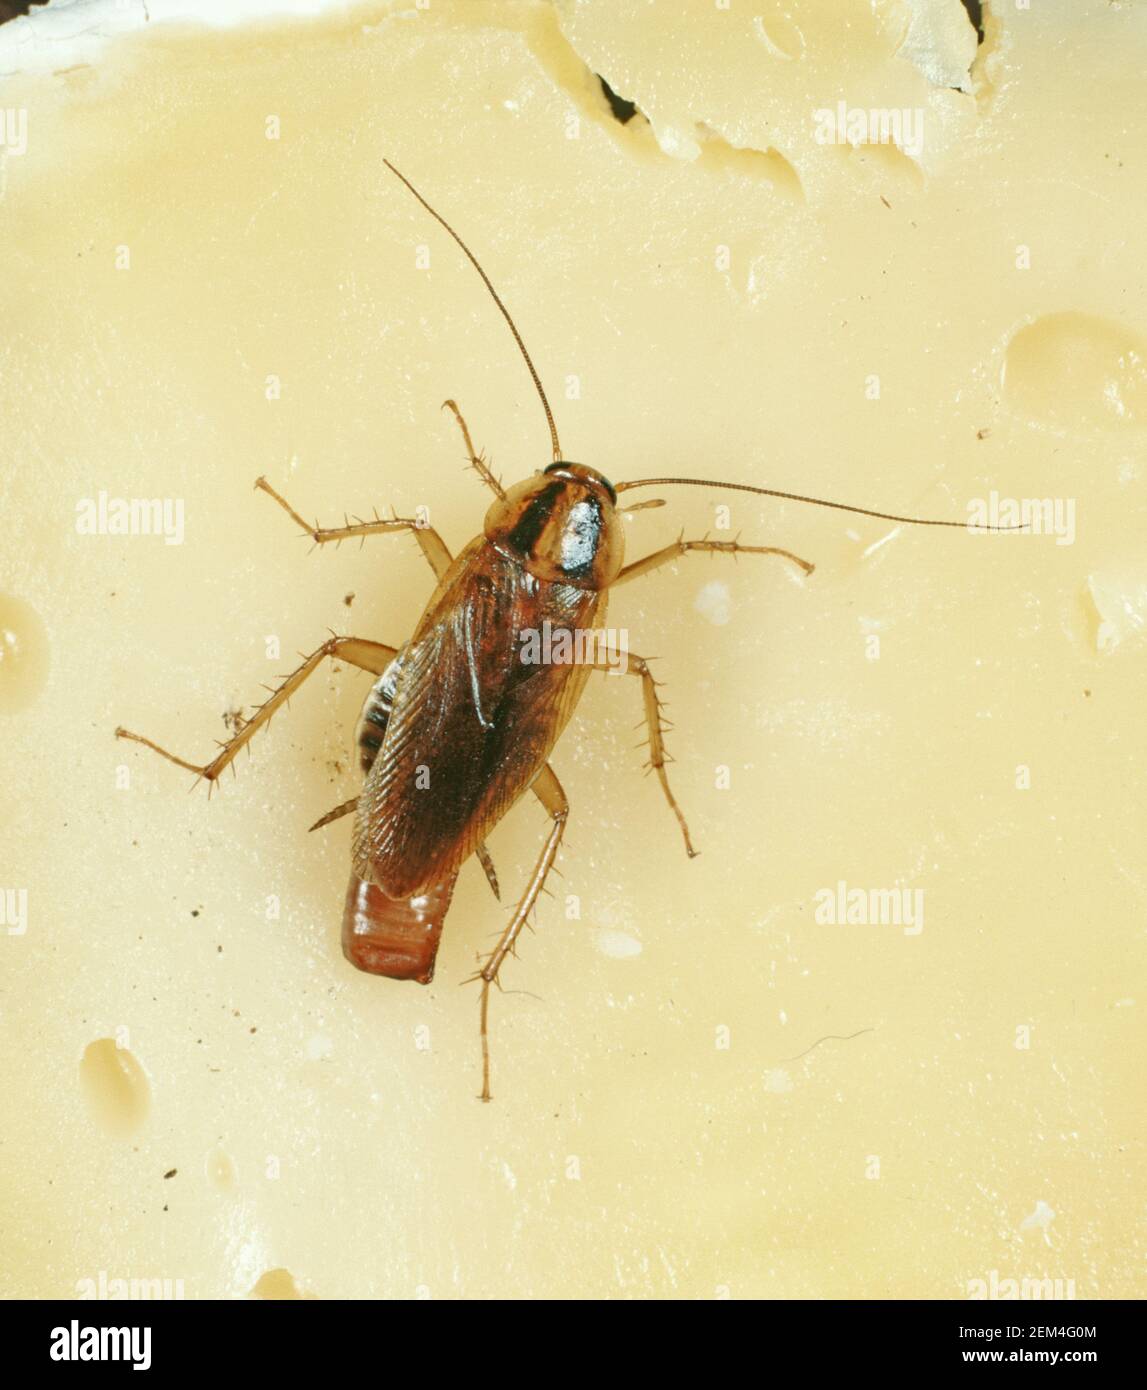 Deutsche Schabe (Blattella germanica) Gravid Weibchen mit Ei-Fall (Oothecae) öffentliche Gesundheit und Küche Schädling auf Käse Stockfoto